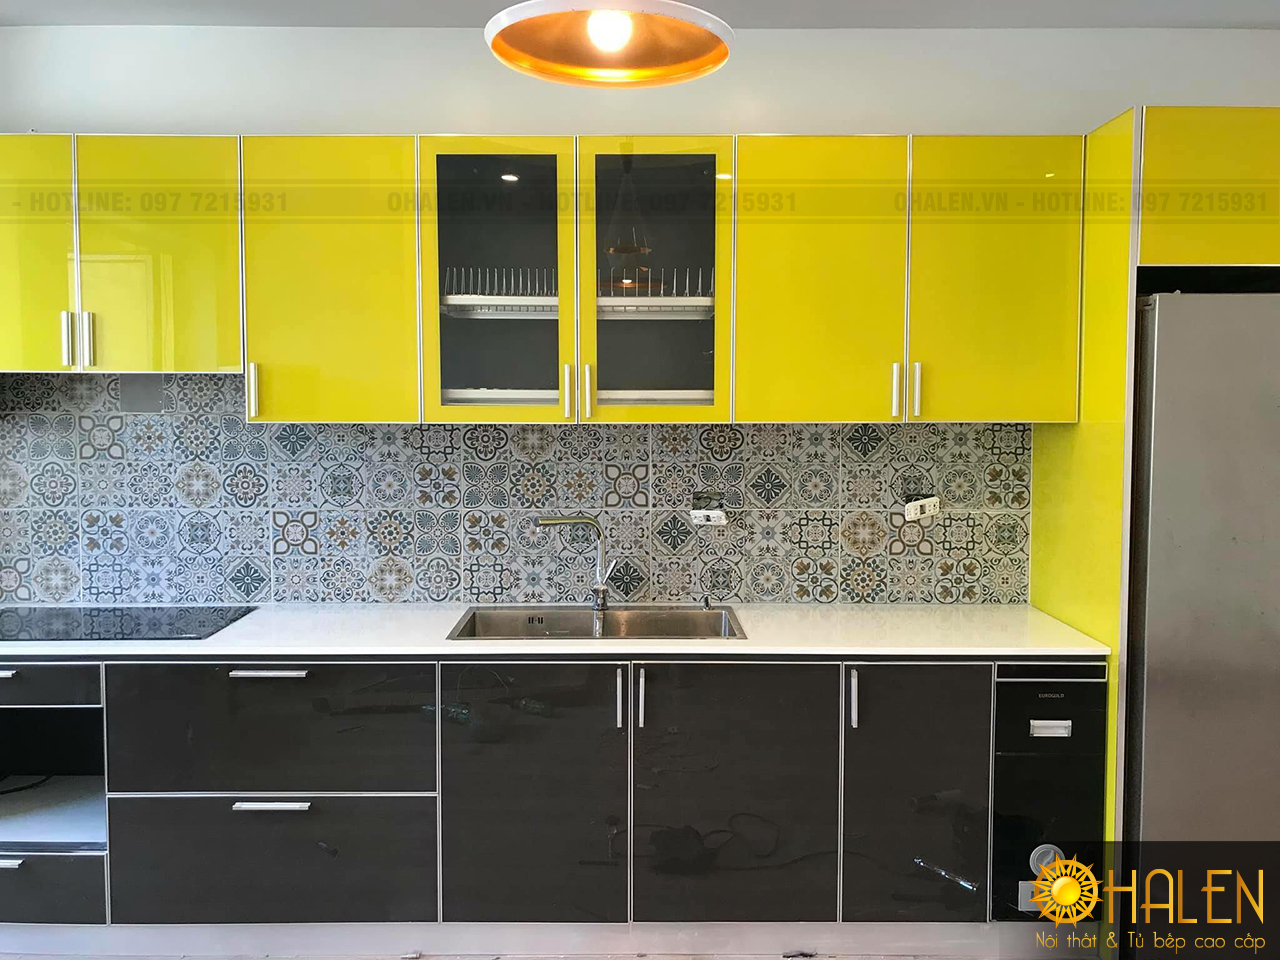 Màu sắc nổi bật của kính vàng và ghi chắc chắn sẽ khiến căn bếp nhà bạn luôn ấn tượng